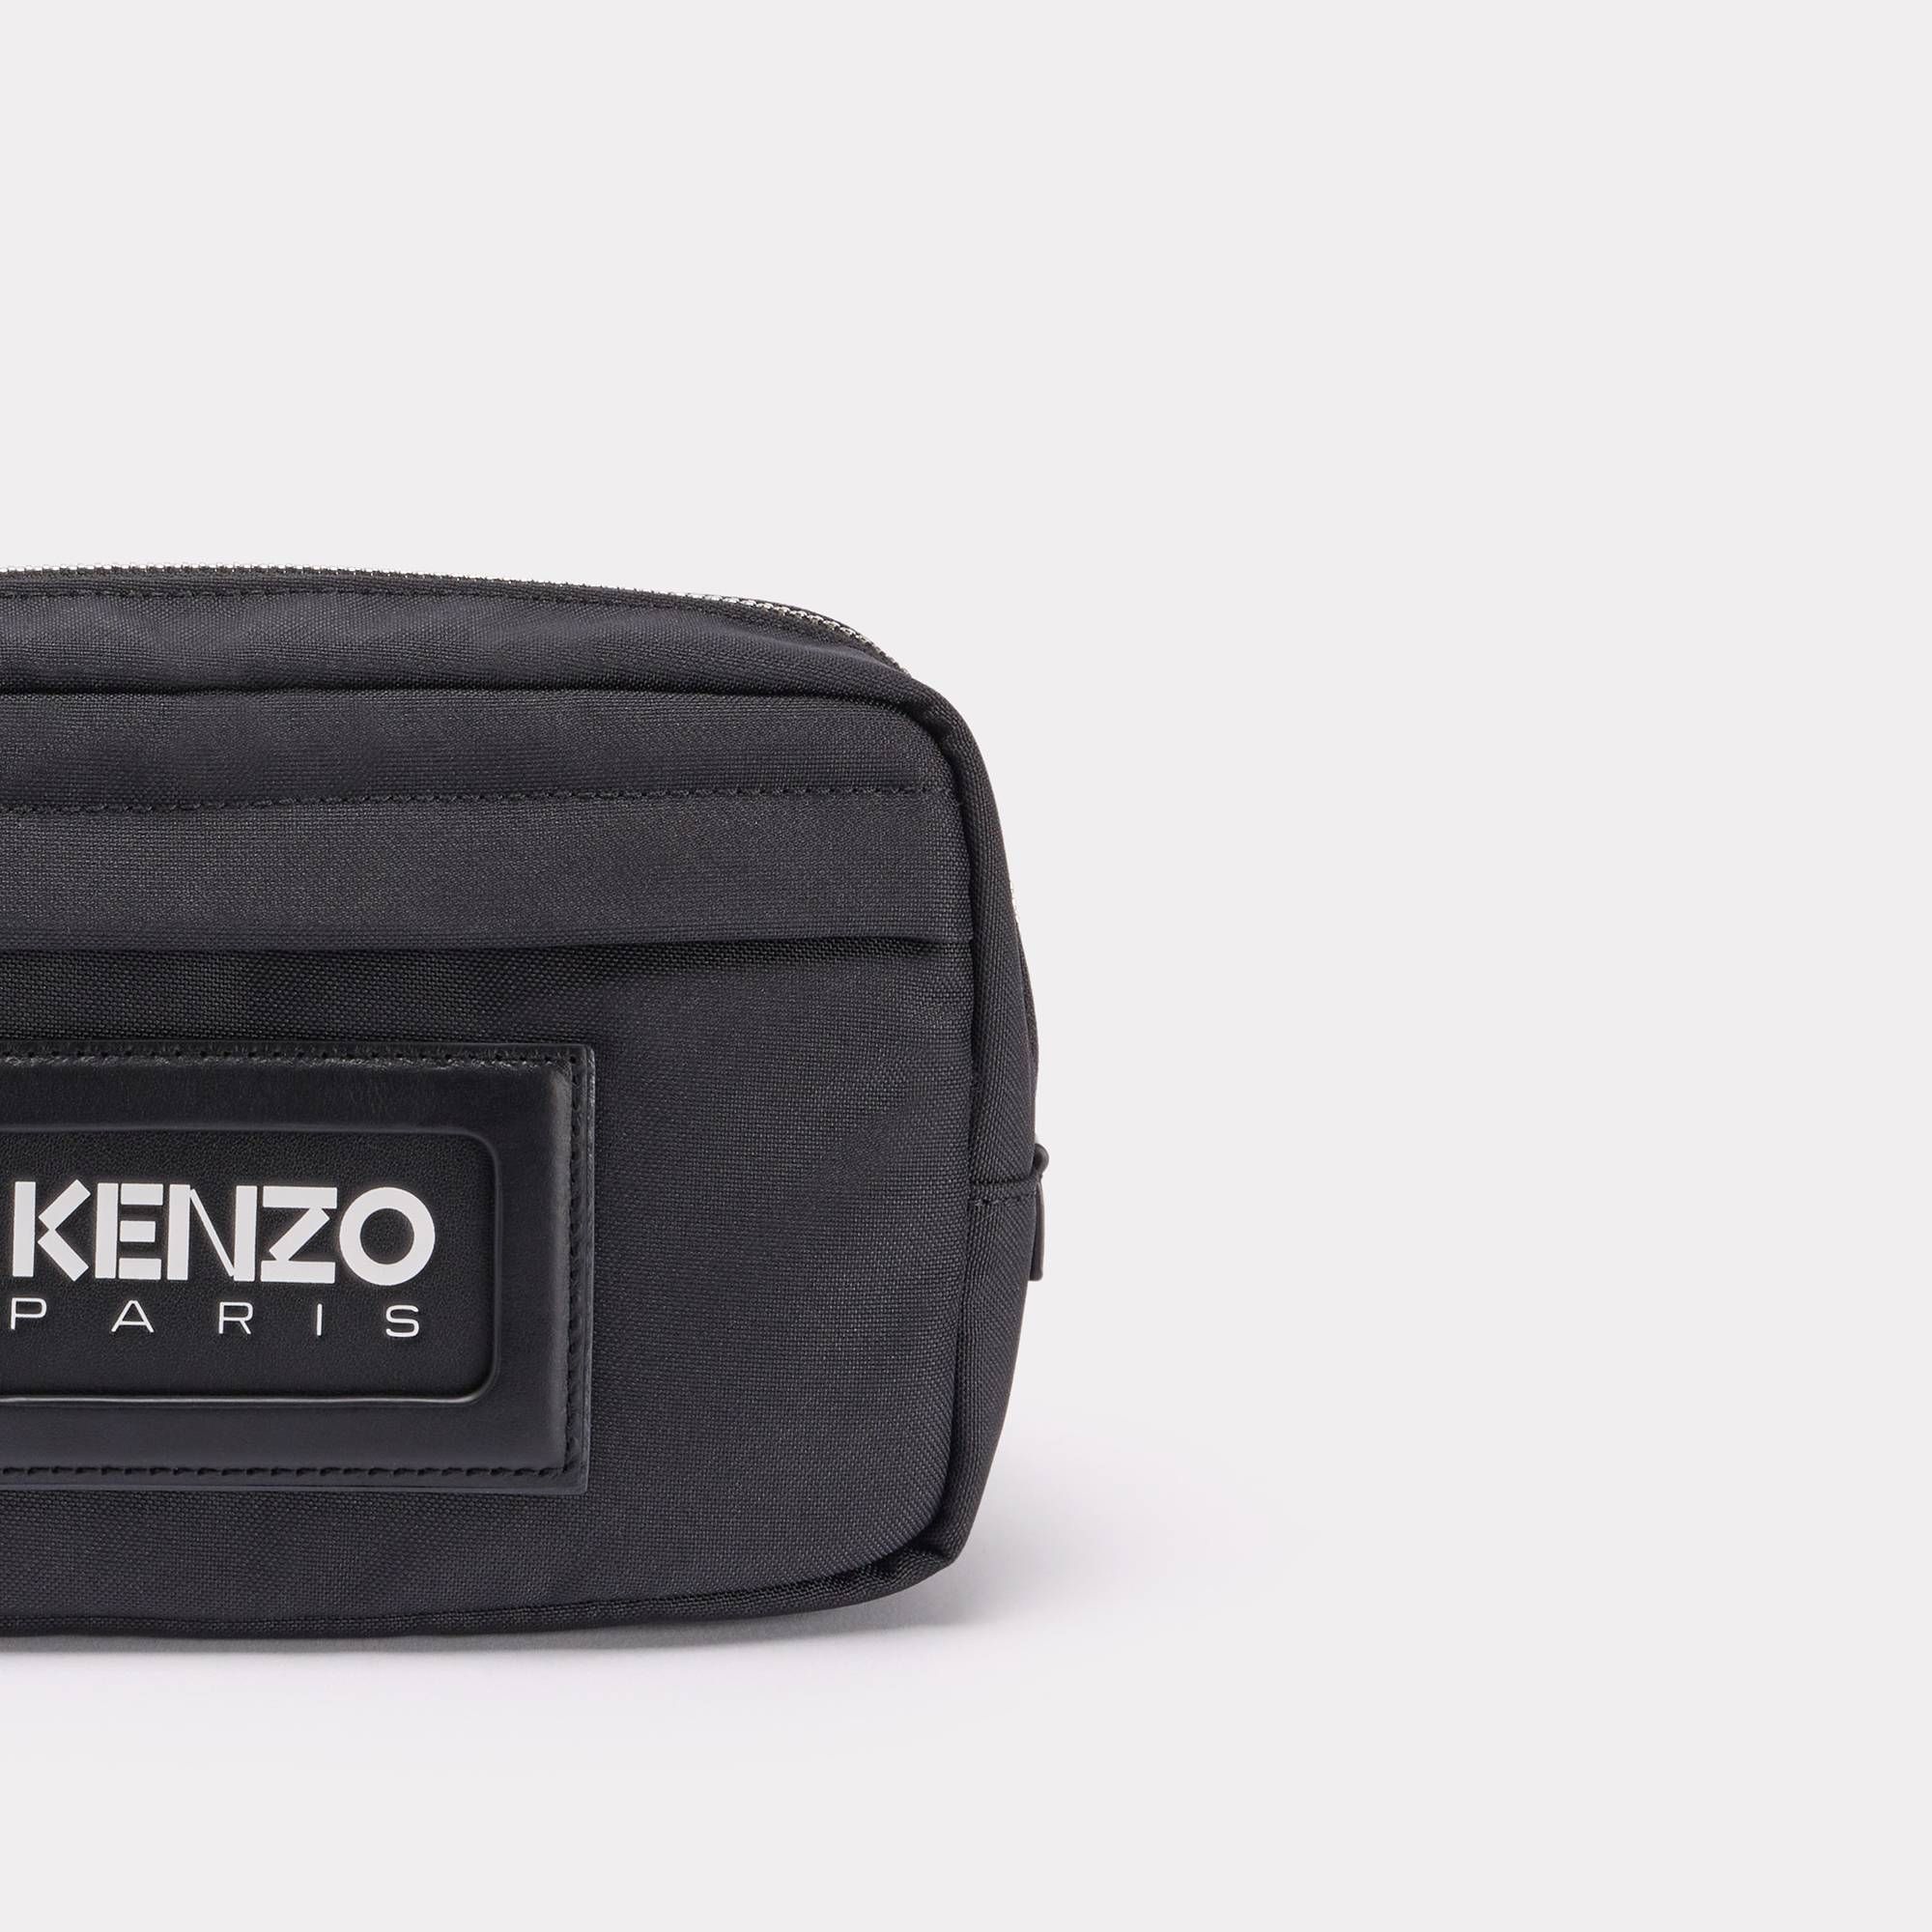  'KENZOGRAPHY' Belt Bag - Black 